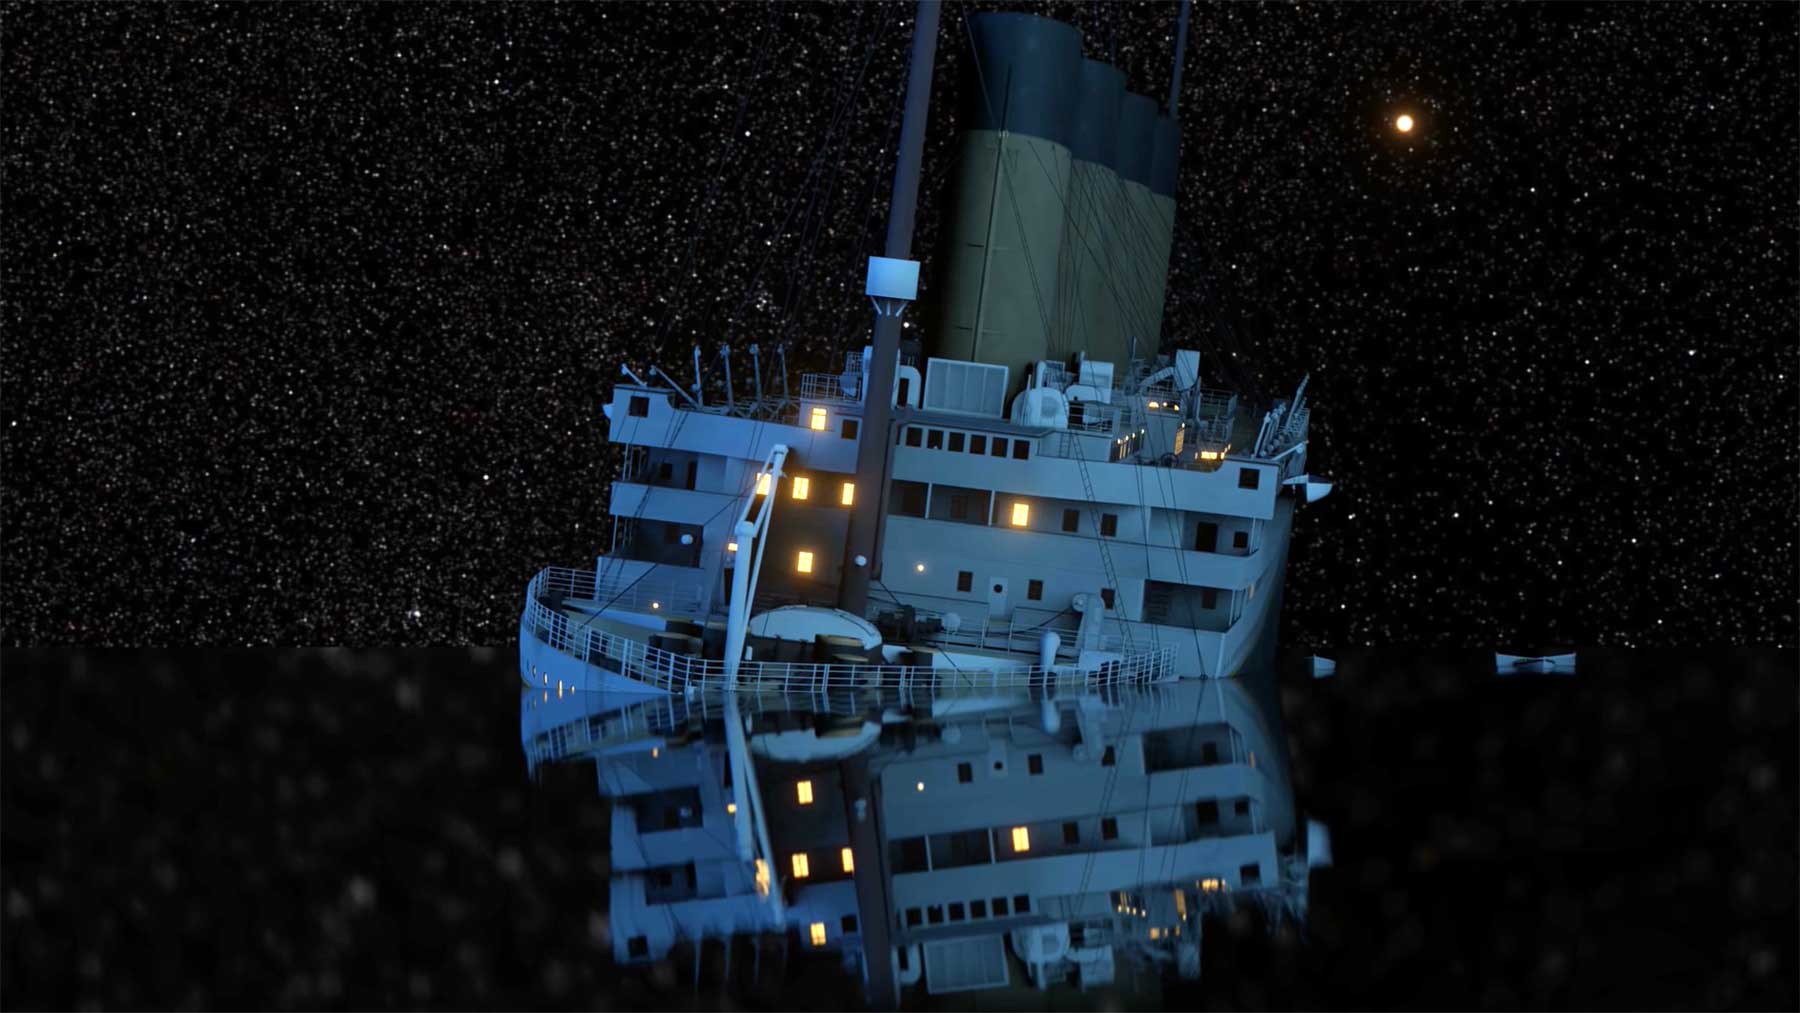 Das Versinken der Titanic in Echtzeit anschauen Titanic-Sinken-in-echtzeit 